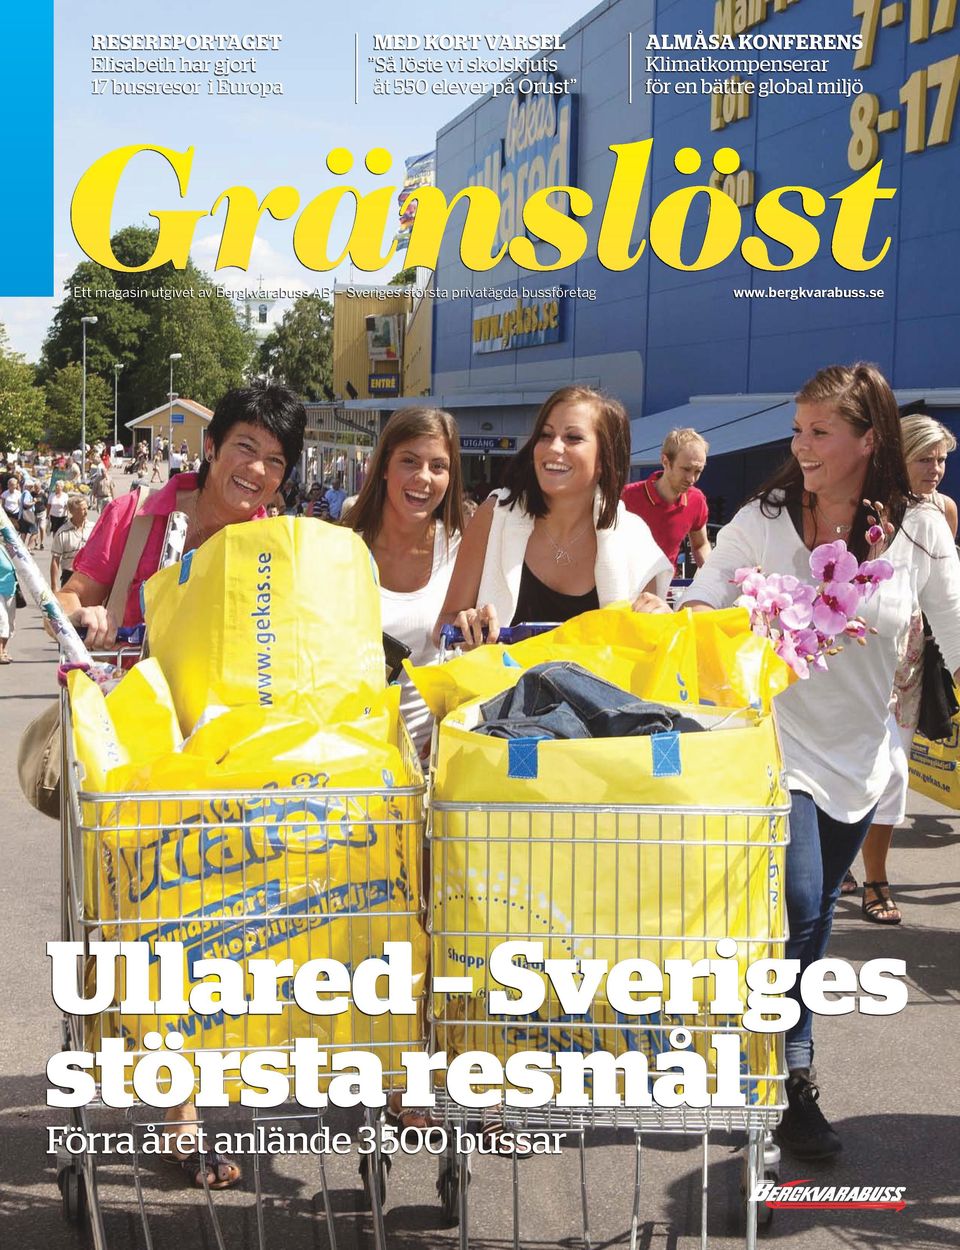 global miljö Gränslöst Ett magasin utgivet av Bergkvarabuss AB Sveriges största